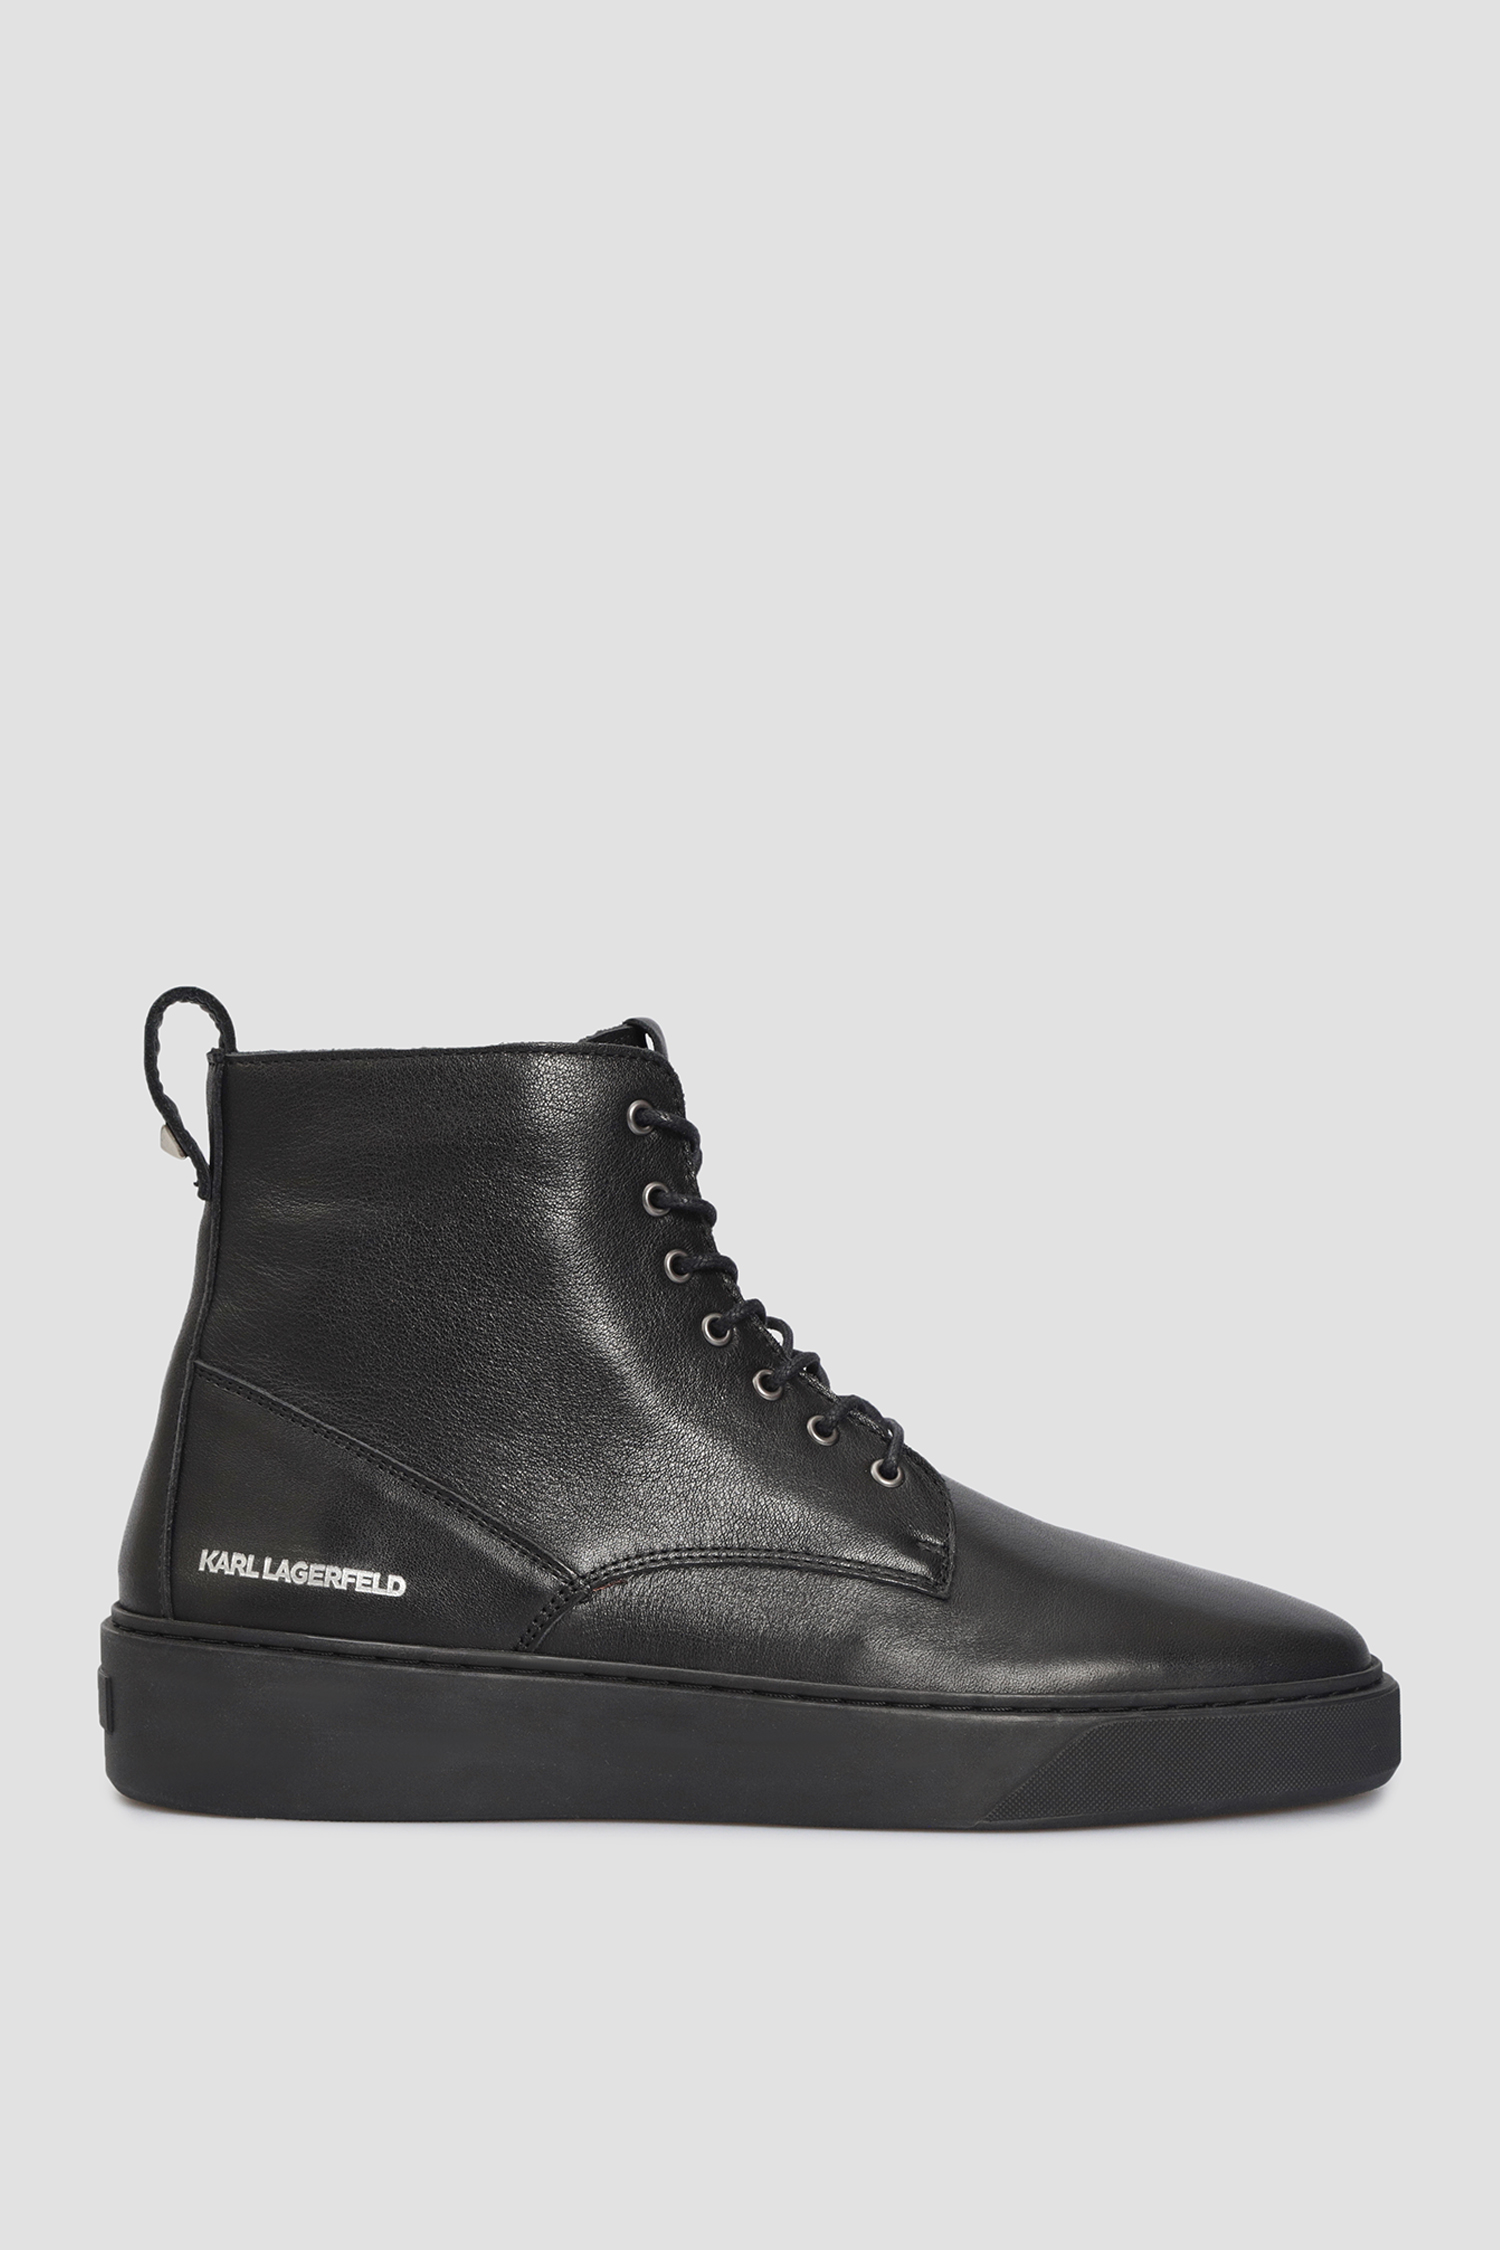 Мужские черные кожаные ботинки Karl Lagerfeld 524490.855011;990